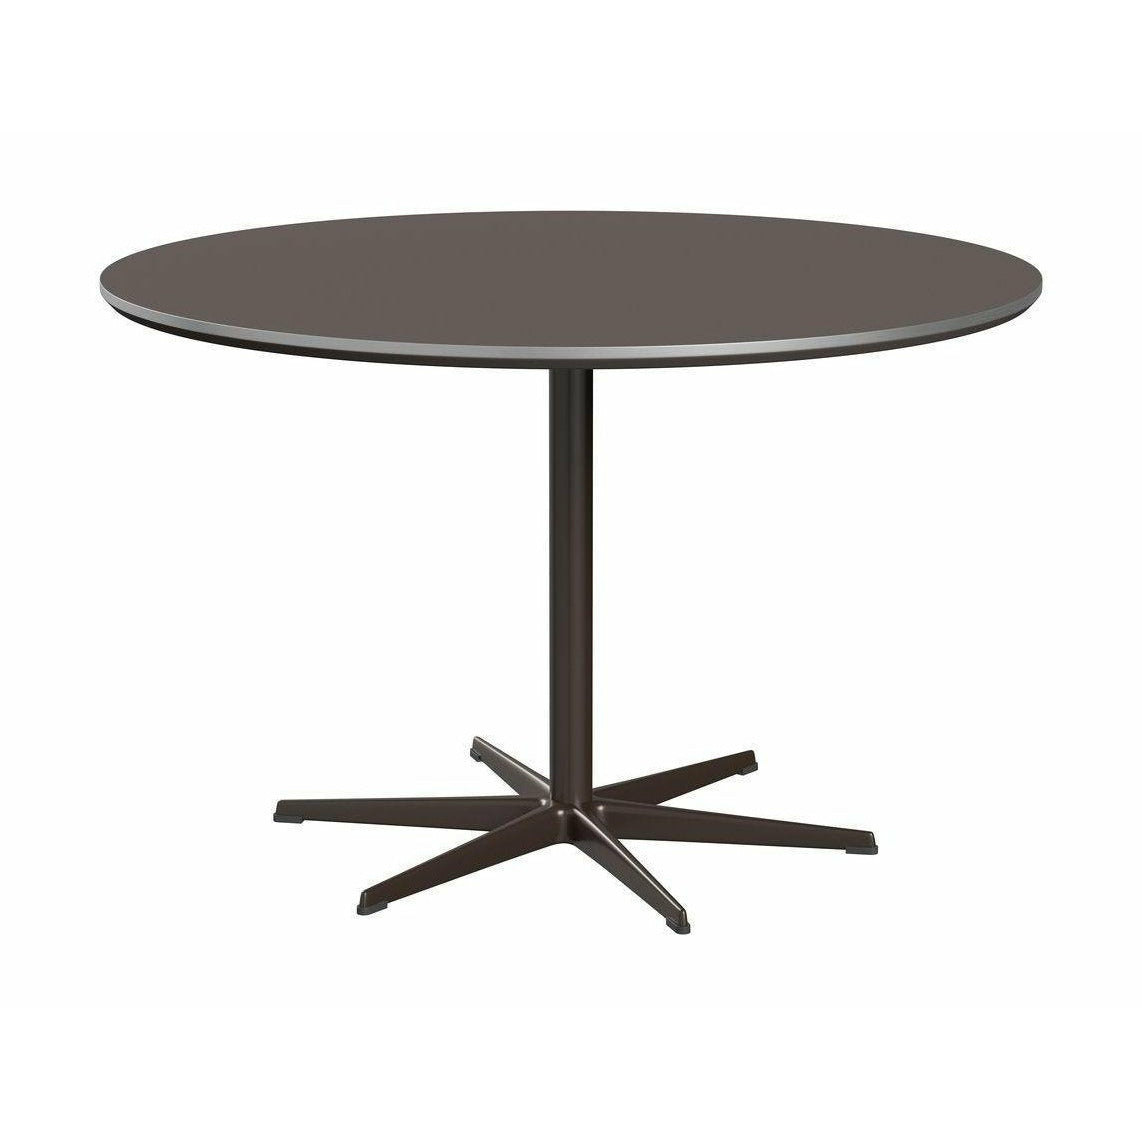 Kruhový jídelní stůl Fritz Hansen Ø120 cm, šedý/hnědý bronz